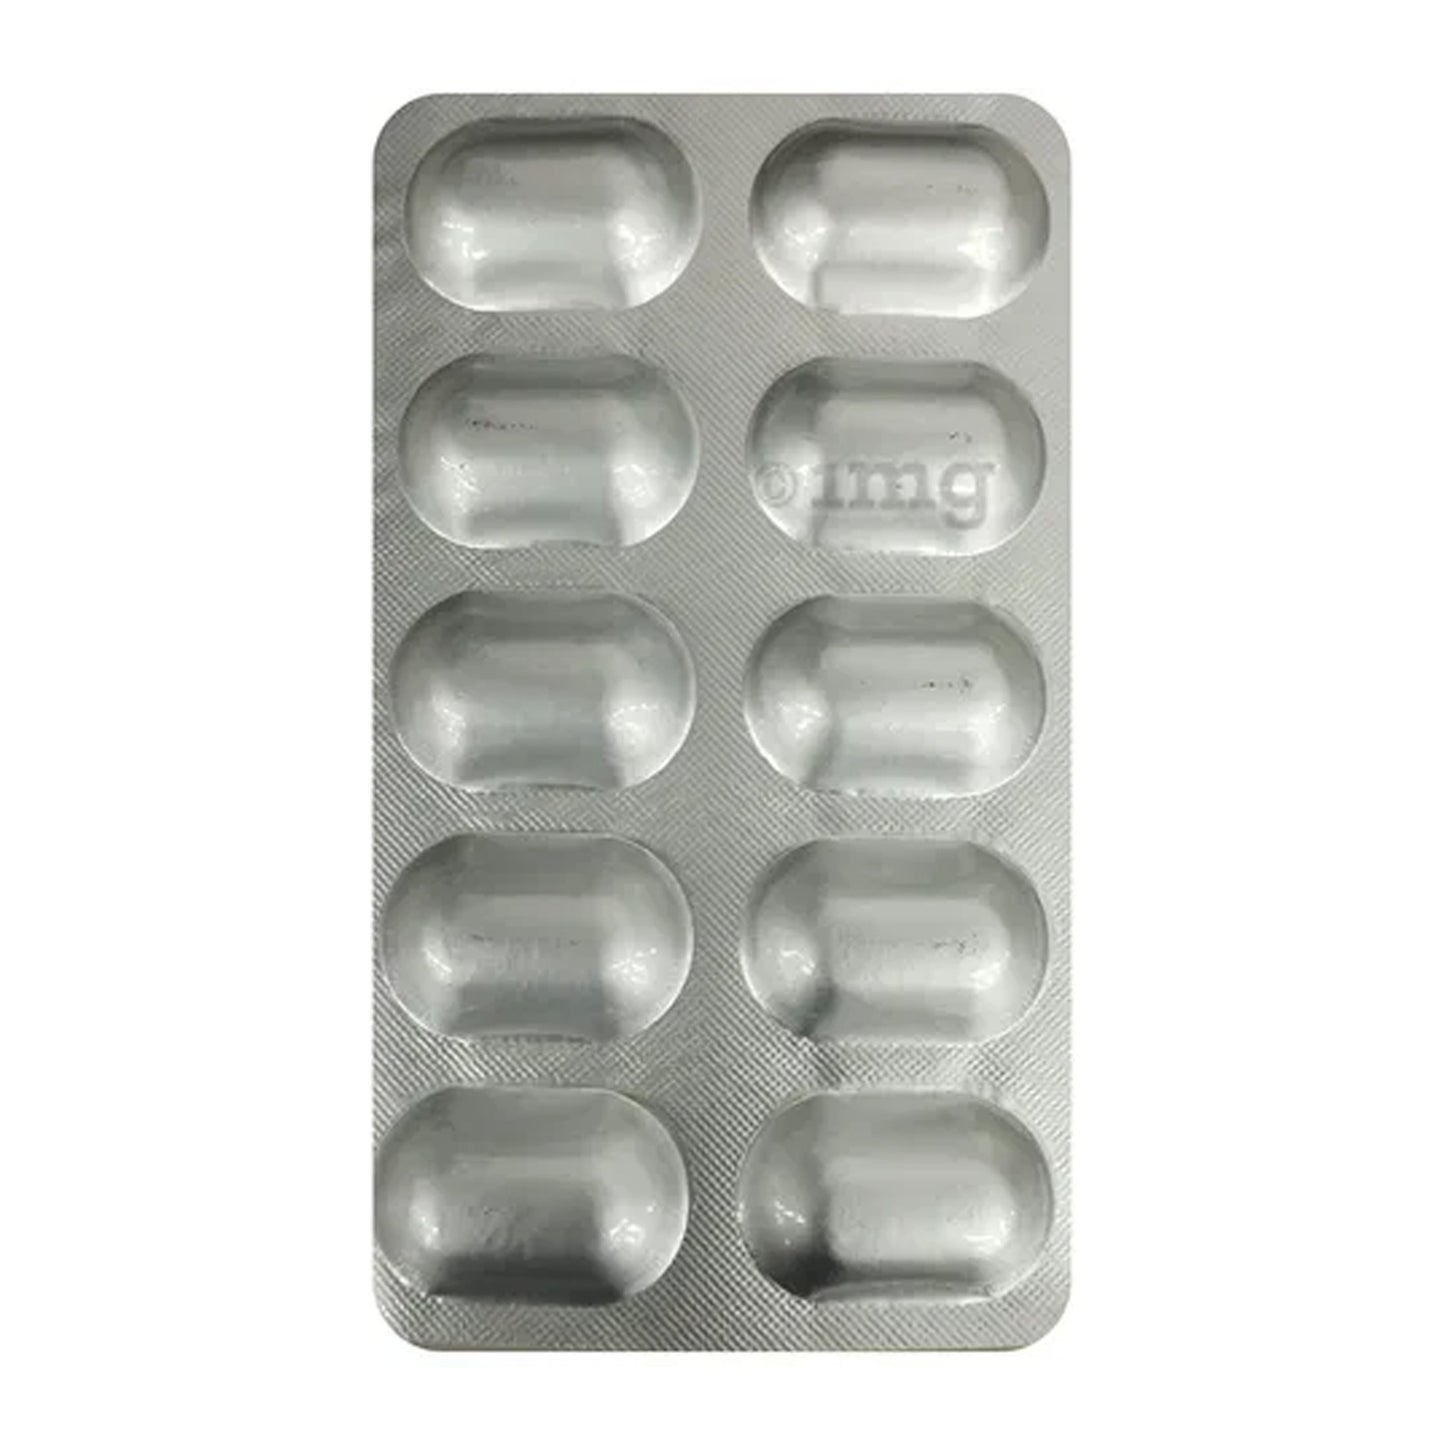 كوبافورتي CD3 XL، 10 أقراص